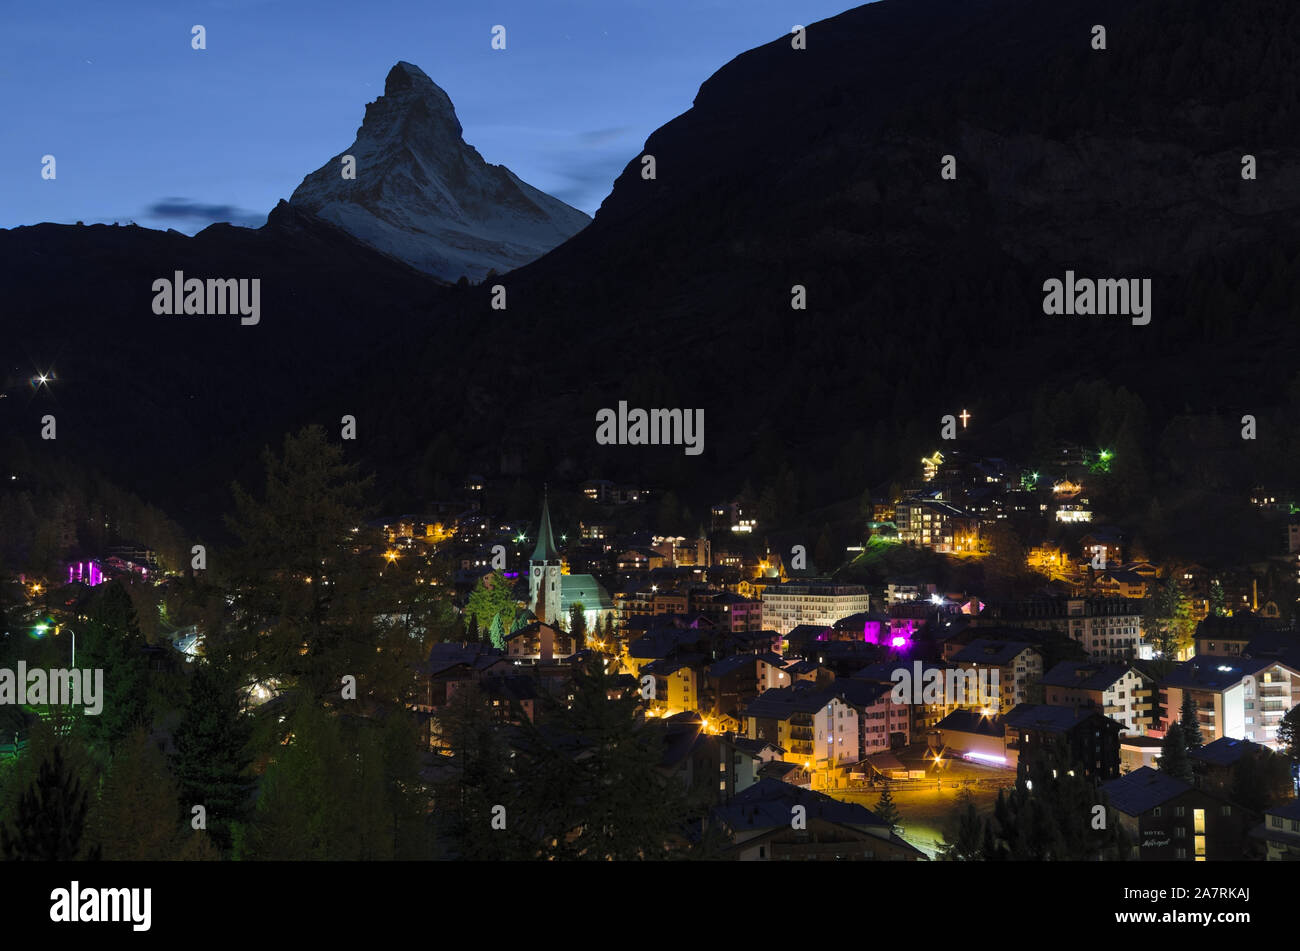 Vista notturna della località sciistica di Zermatt (Svizzera) con il Cervino (Monte Cervino) in background Foto Stock